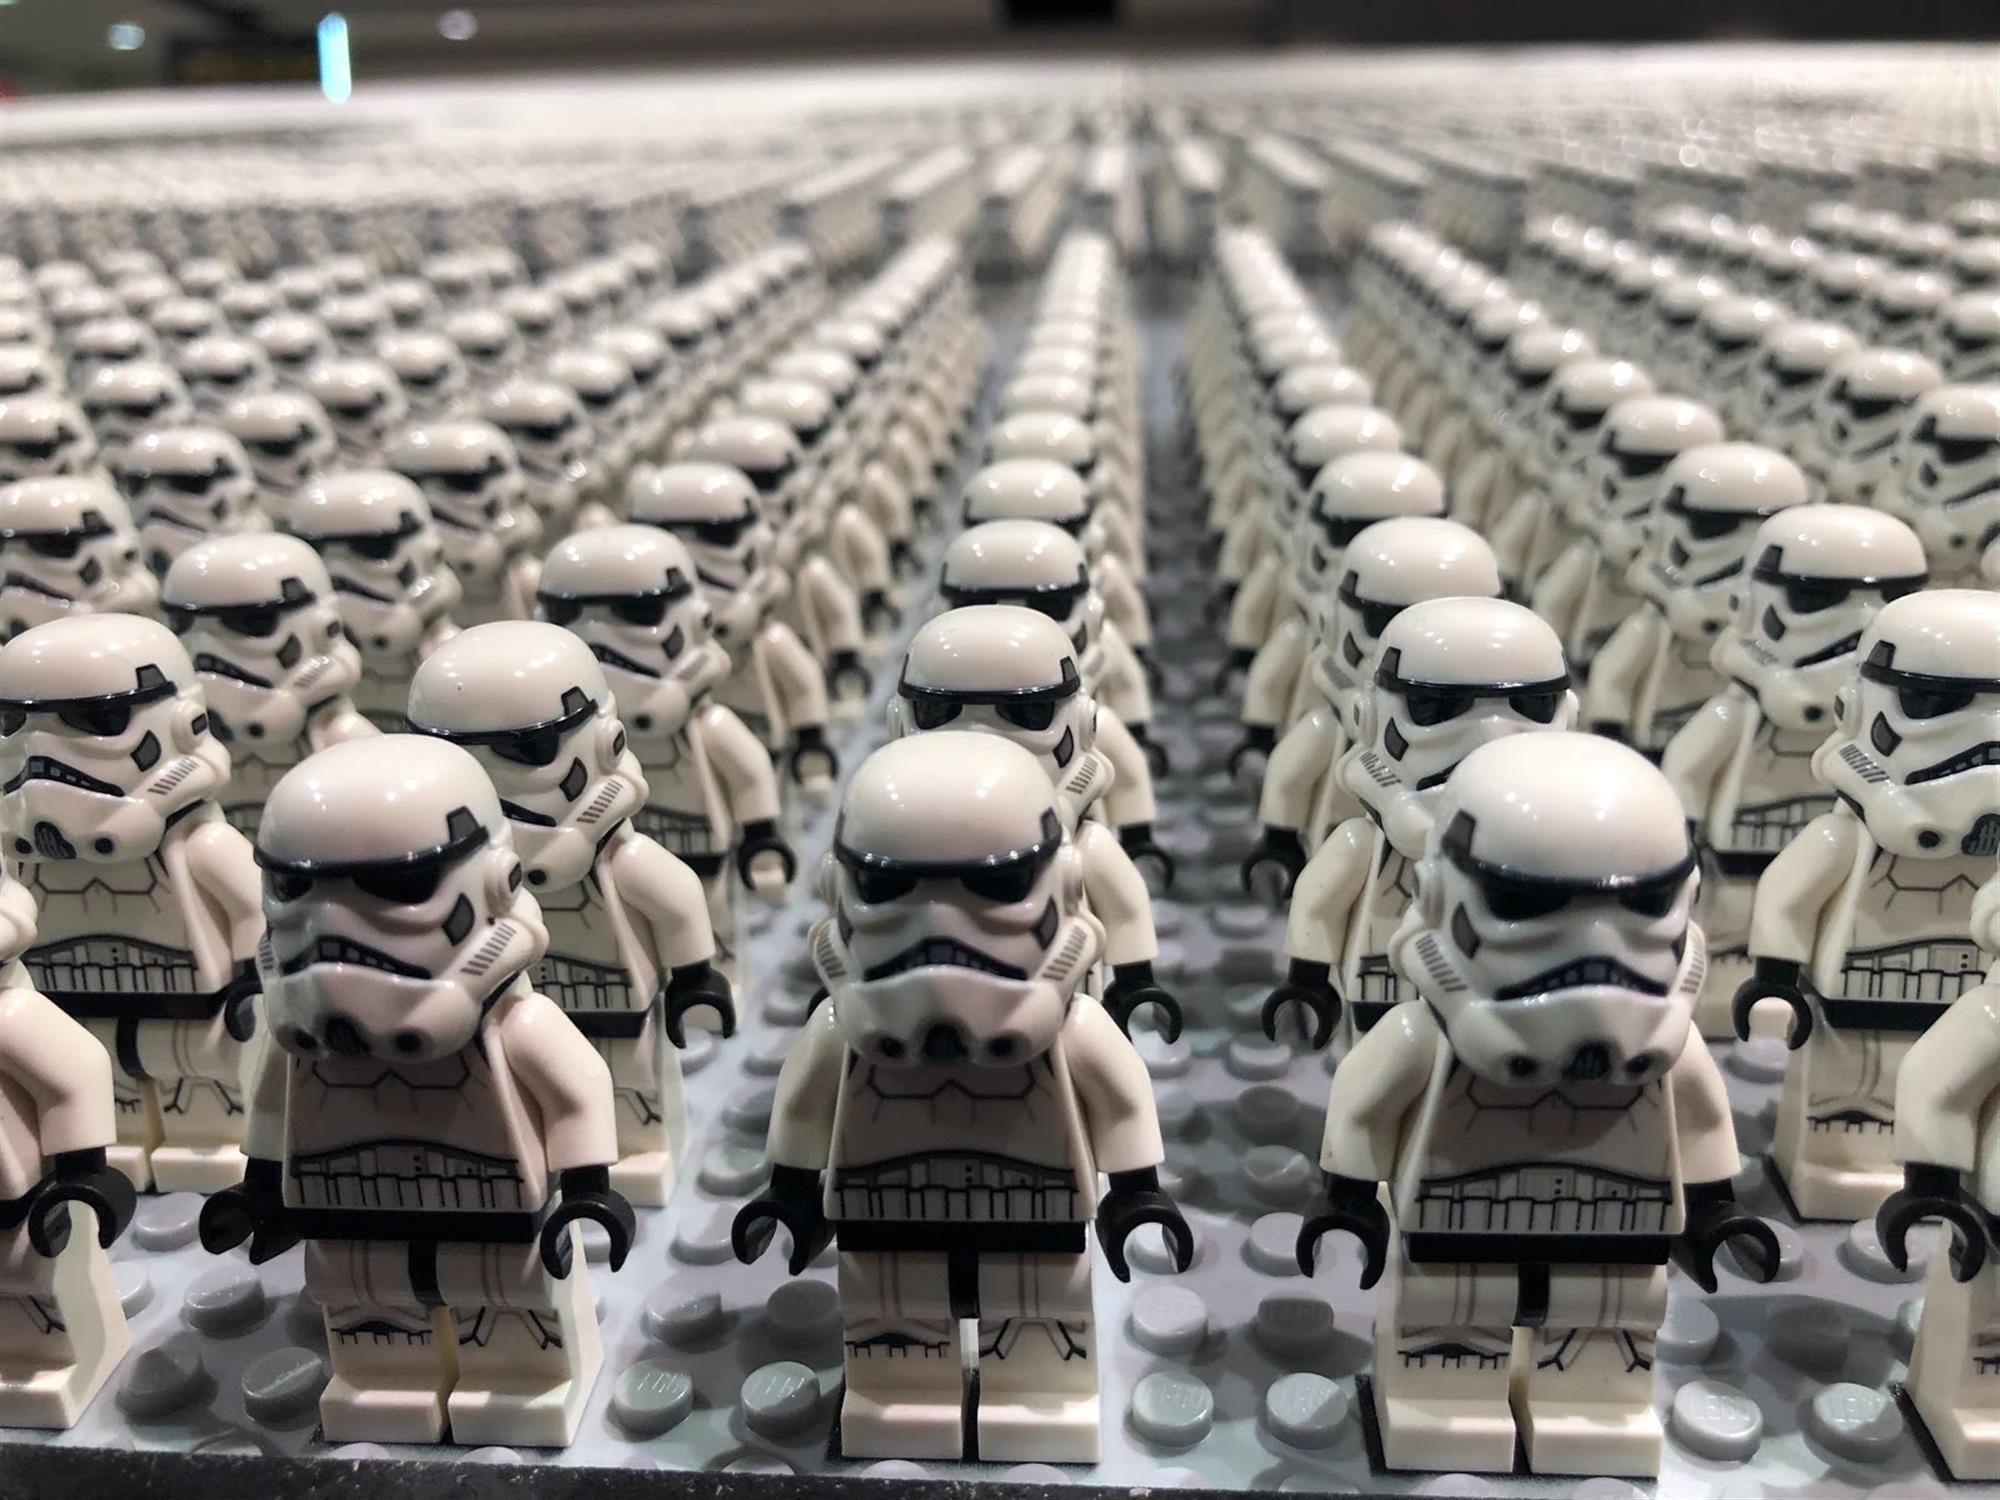 lego star wars stormtrooper army